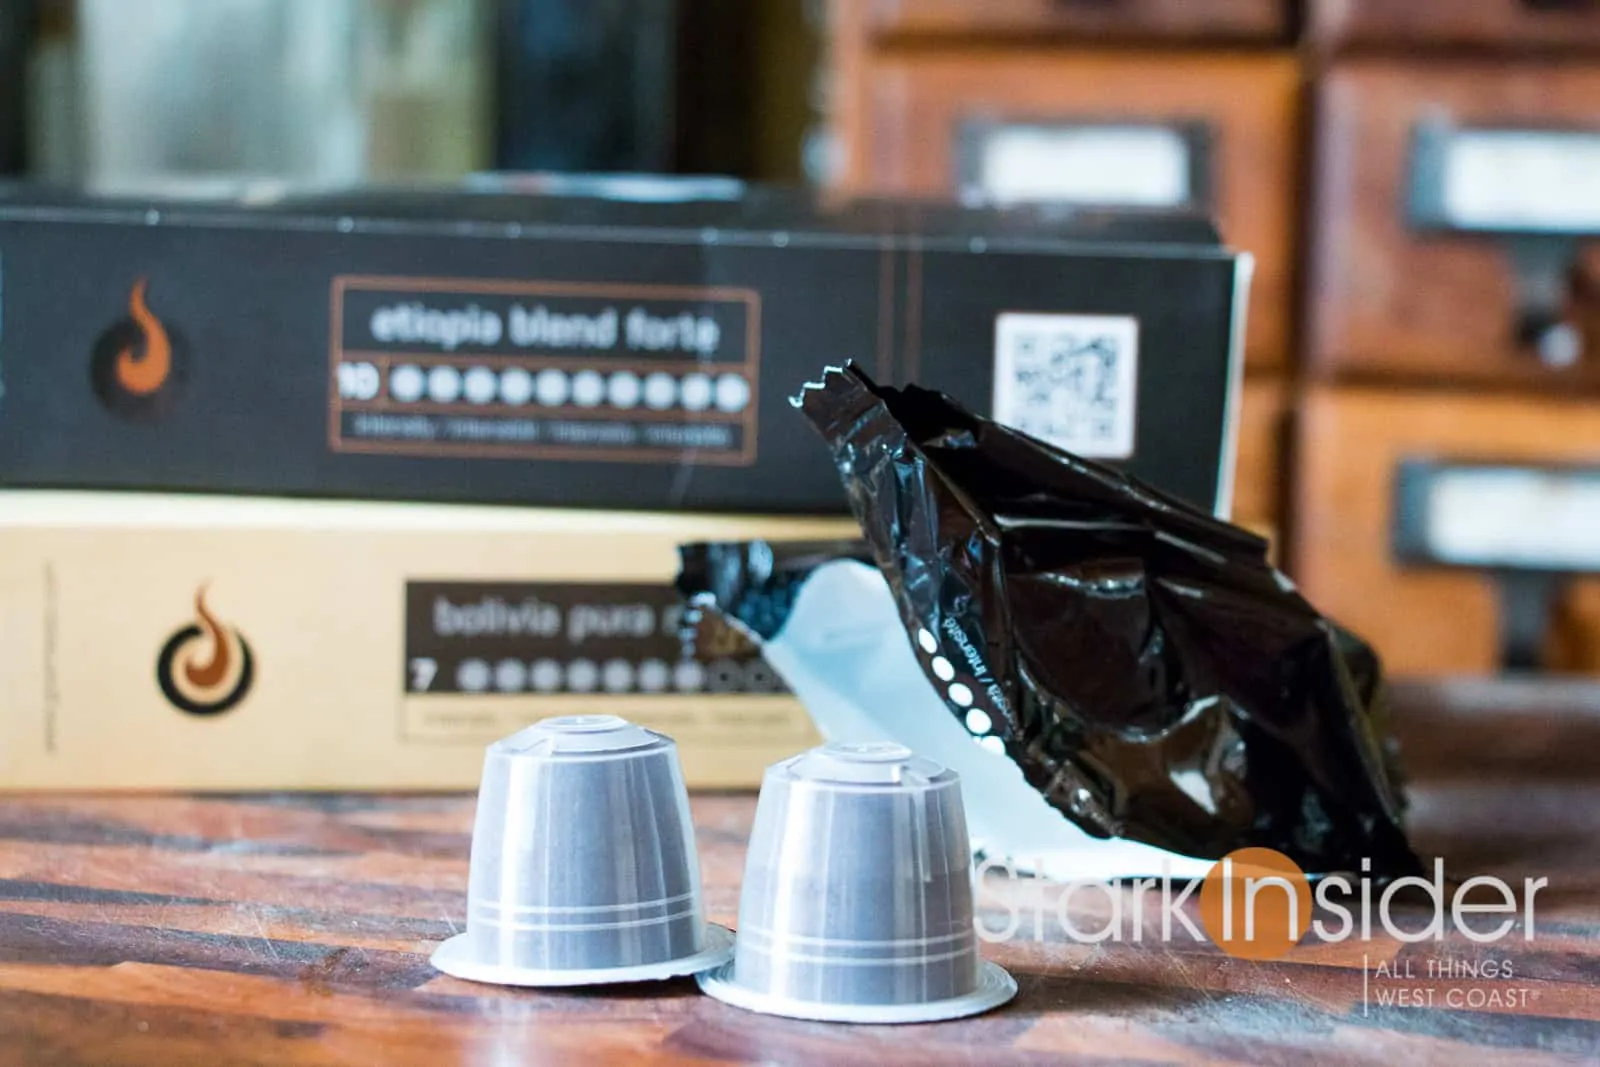 Lungo Capsules For Nespresso Original Machines - Gourmesso Coffee